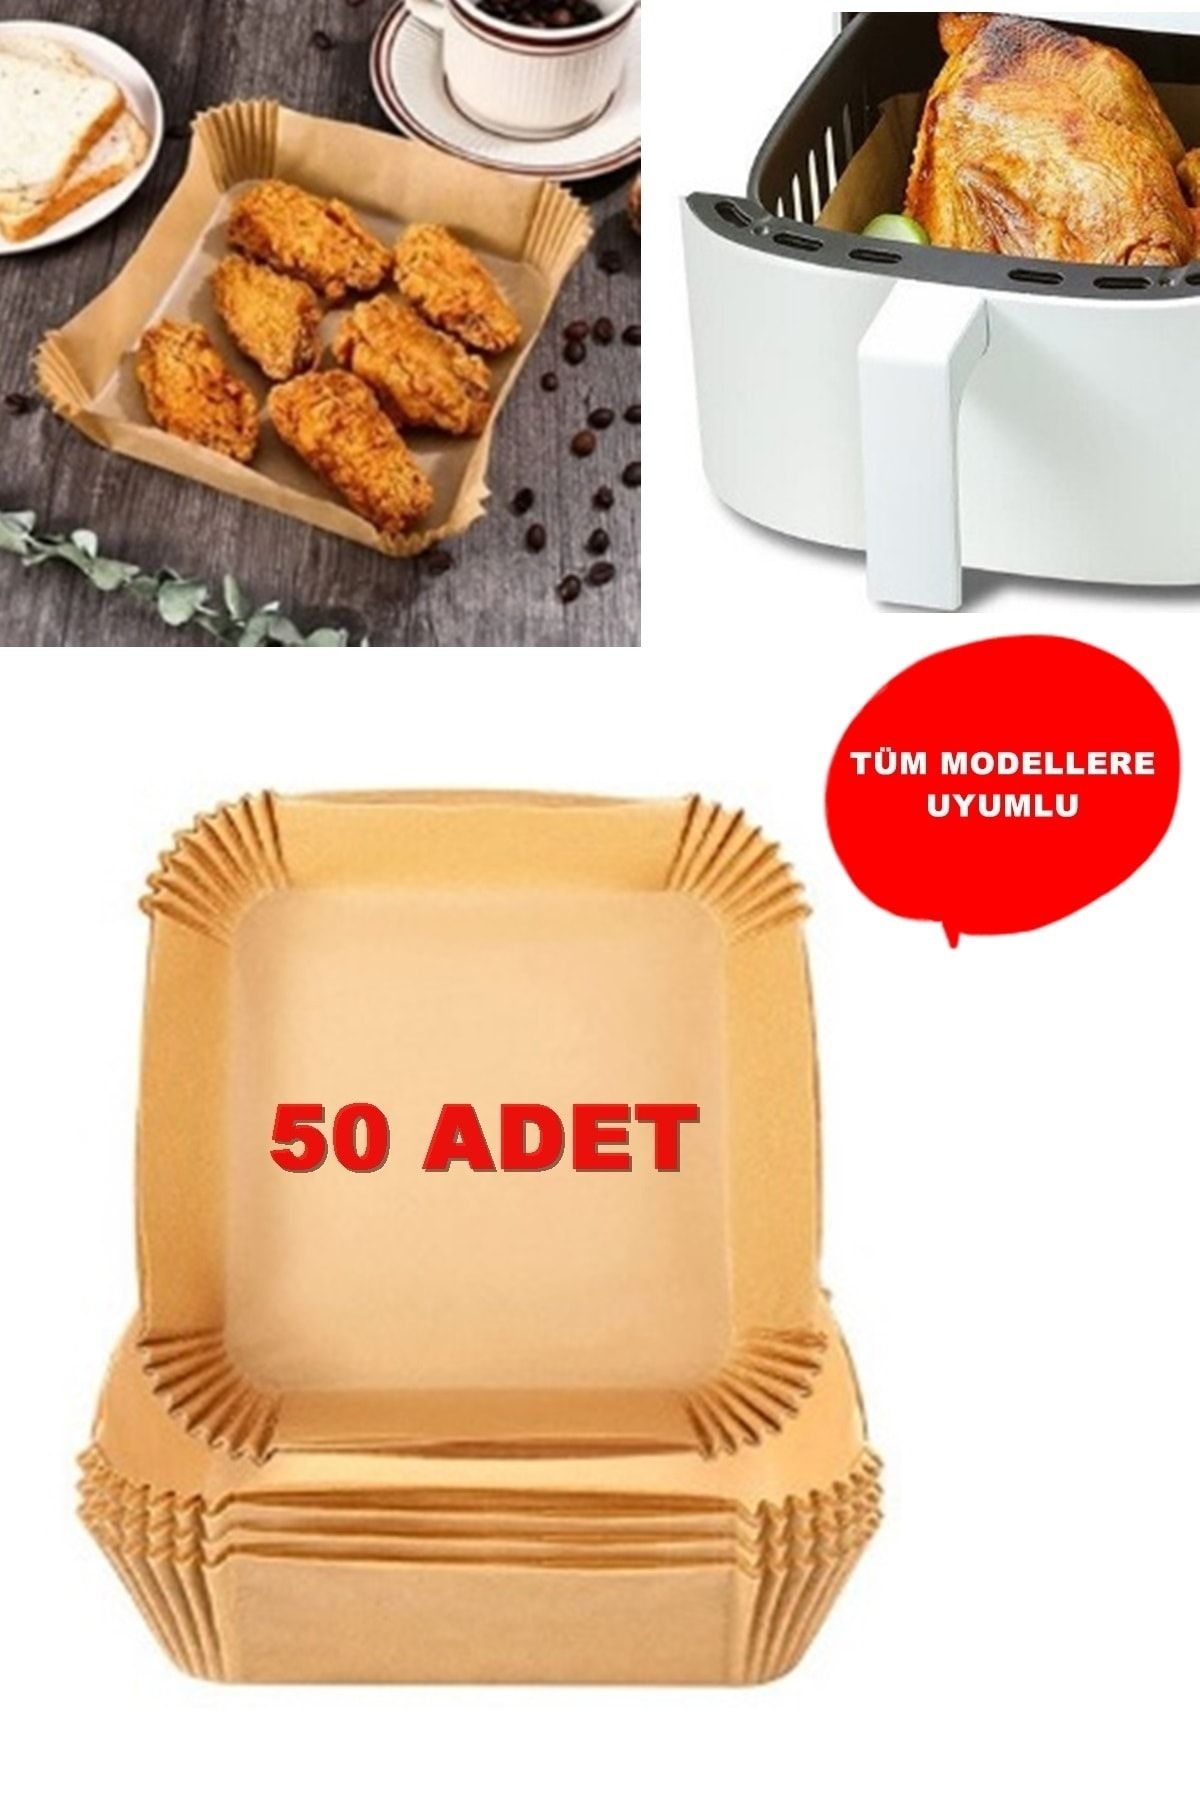 Kitchen Beauty Airfryer Pişirme Kağıdı 50 Adet Hava Fritözü Kare Model Pişirme Kağıdı Airfryer Yağsız Firitöz